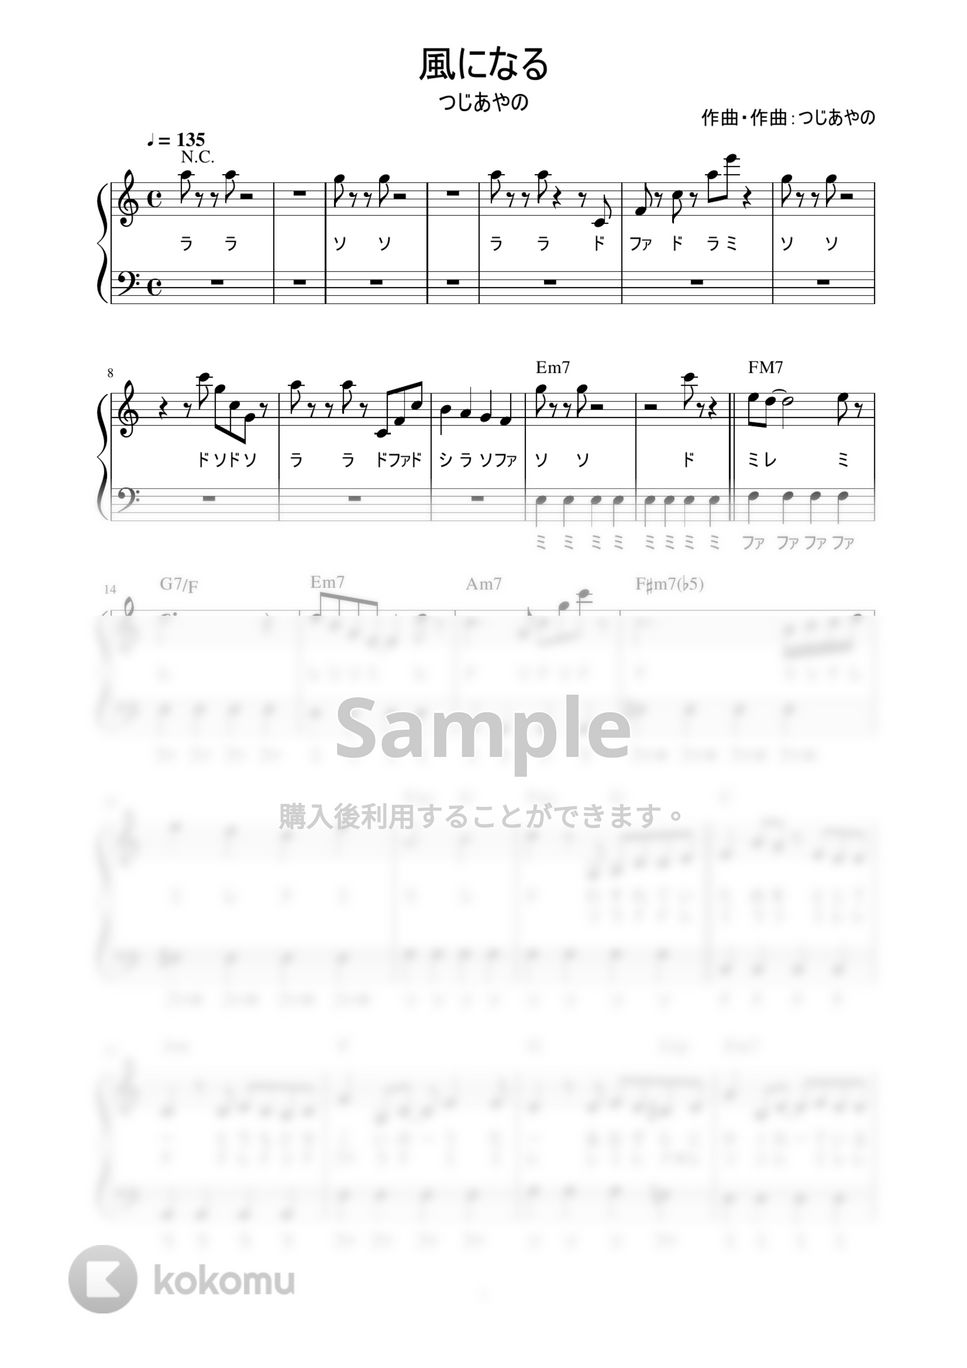 つじあやの - 風になる (かんたん / 歌詞付き / ドレミ付き / 初心者) by piano.tokyo